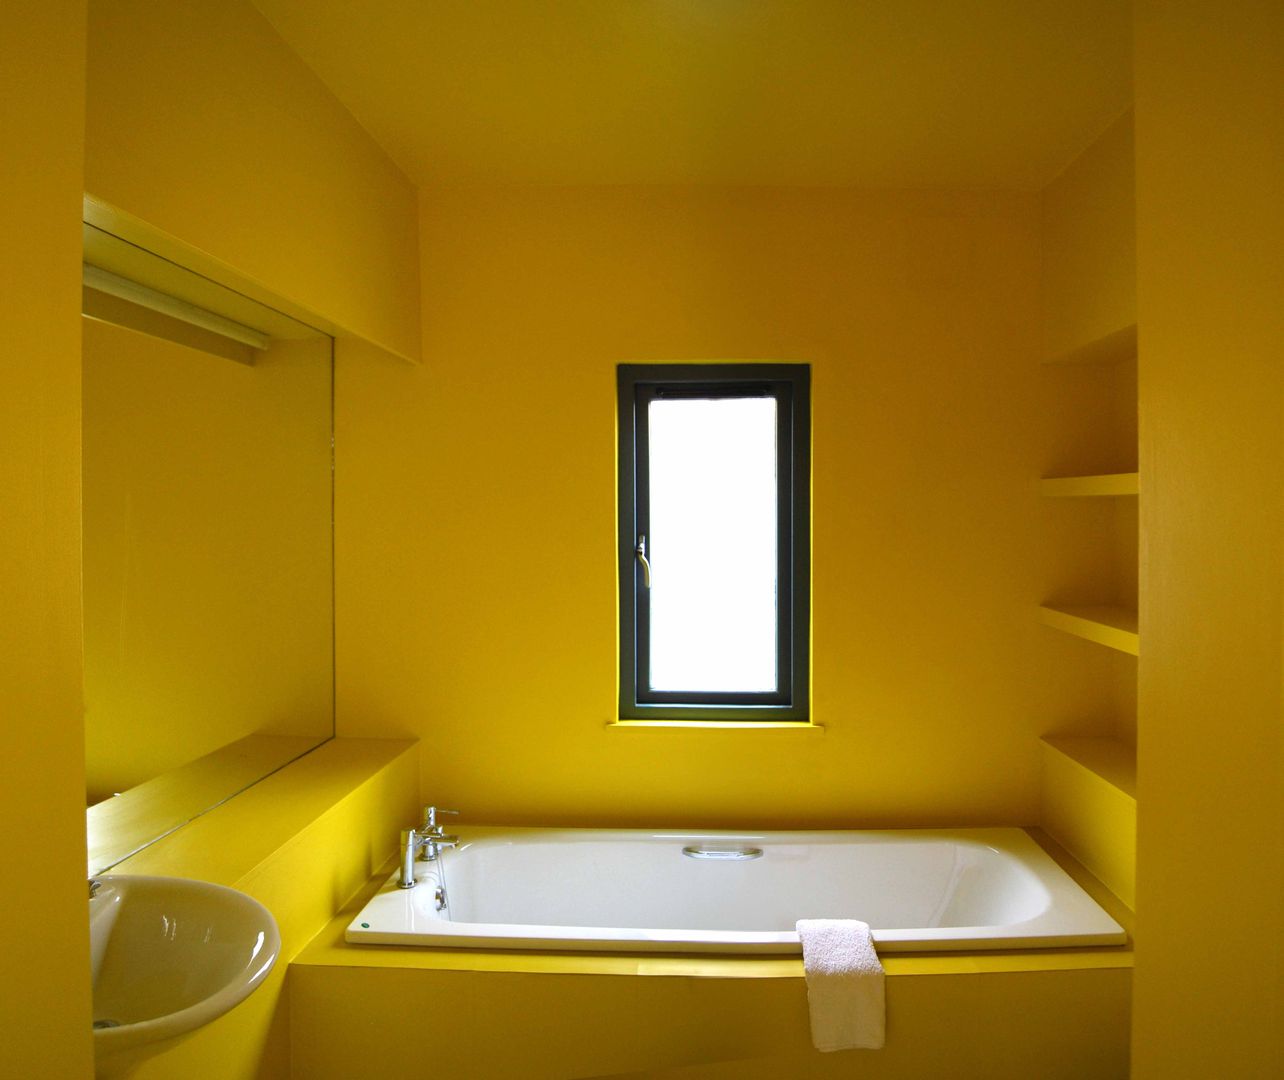 The Yellow Room ROEWUarchitecture Baños modernos Compuestos de madera y plástico yellow,bathroom,mood